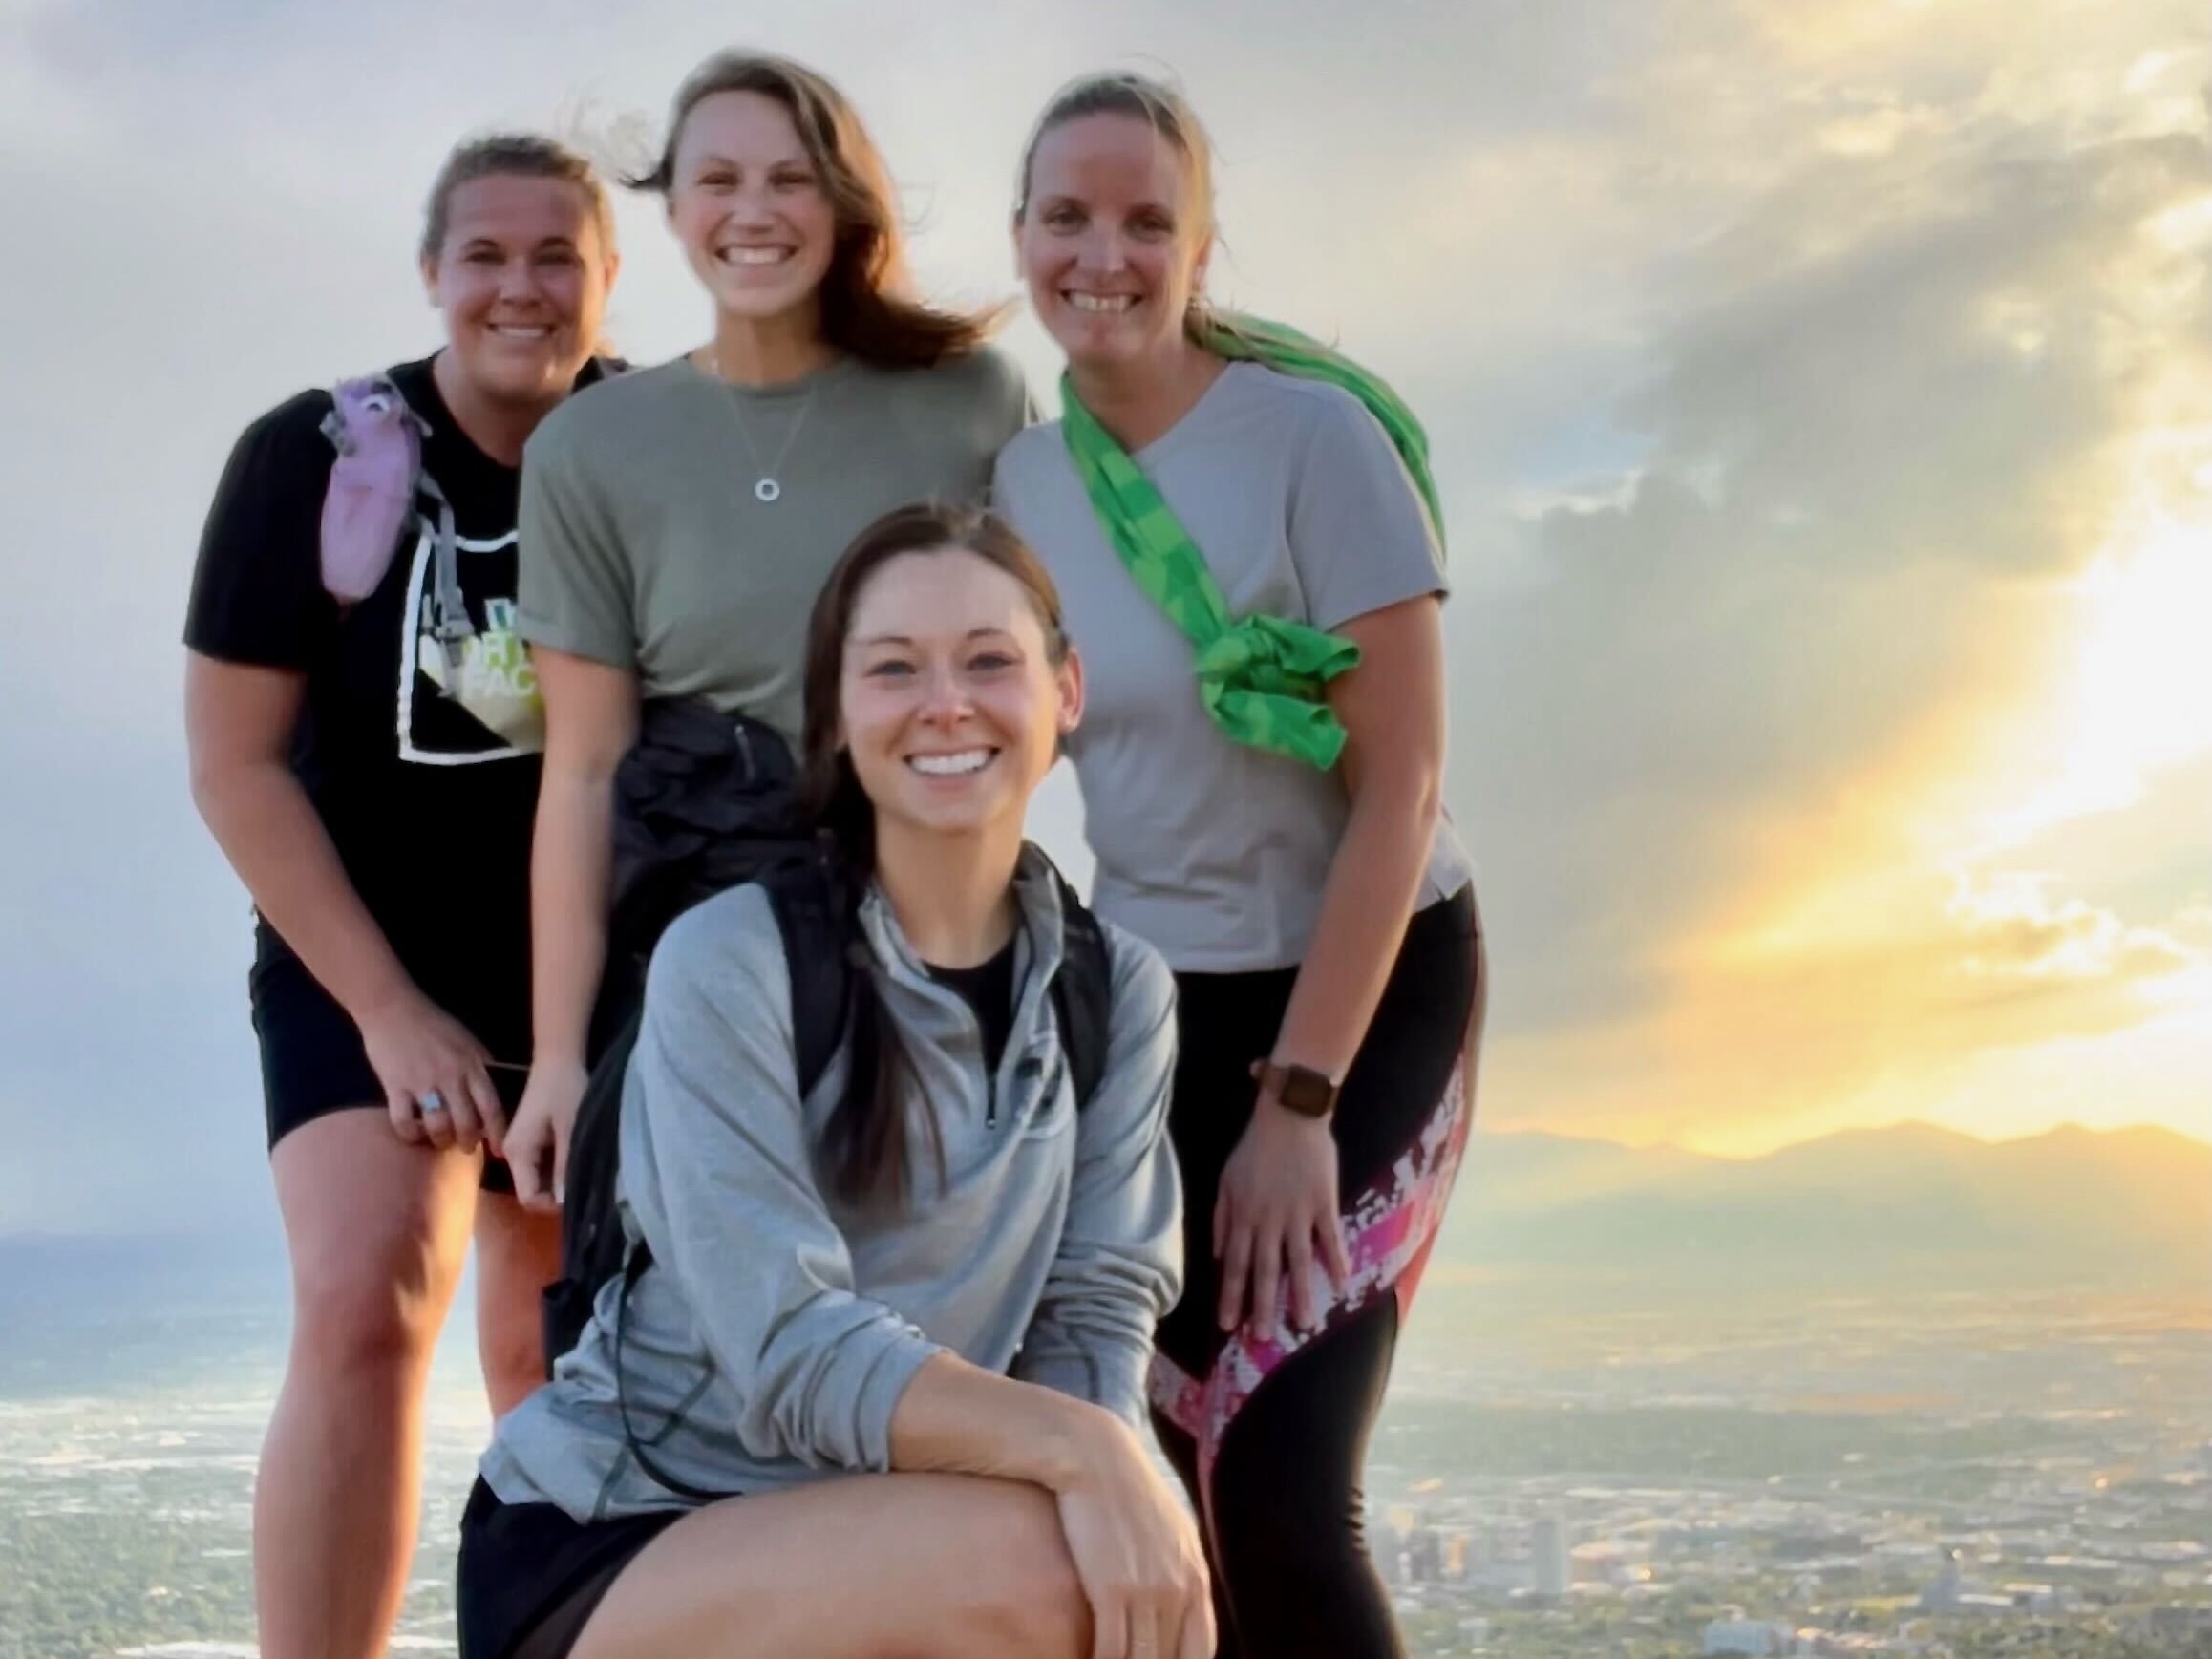  Four Navan women employees standing on a hill overlooking an urban landscape at sunset